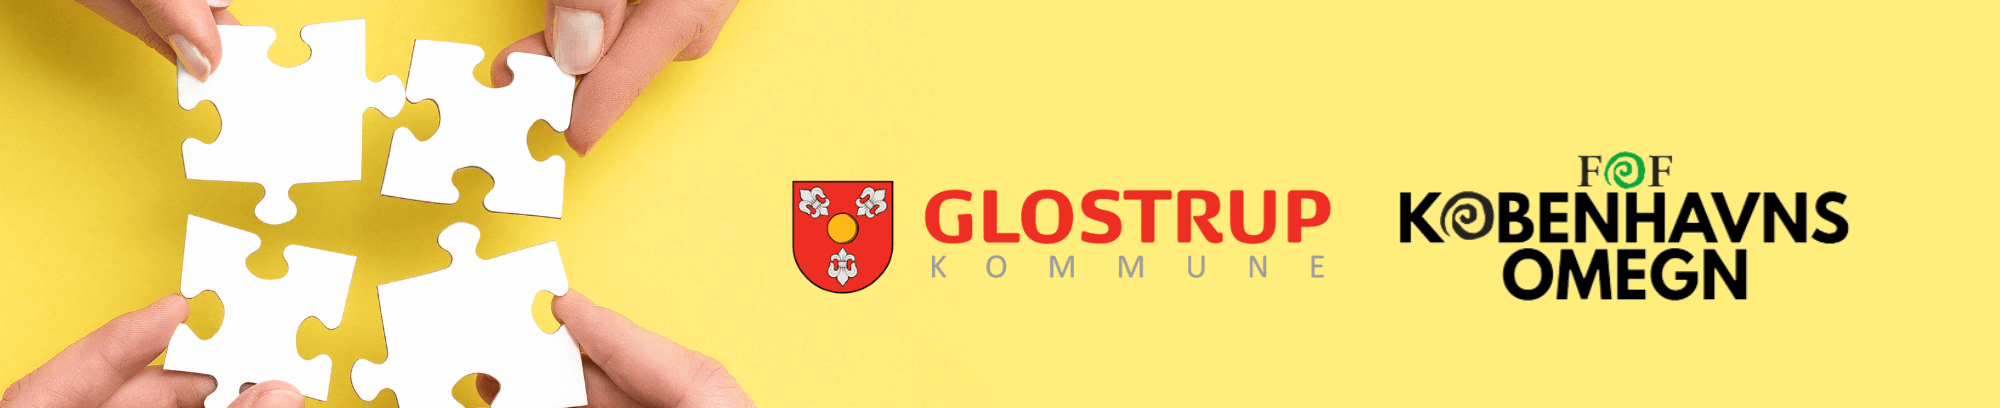 Kurser i samarbejde med Glostrup Kommune | FOF Københavns Omegn